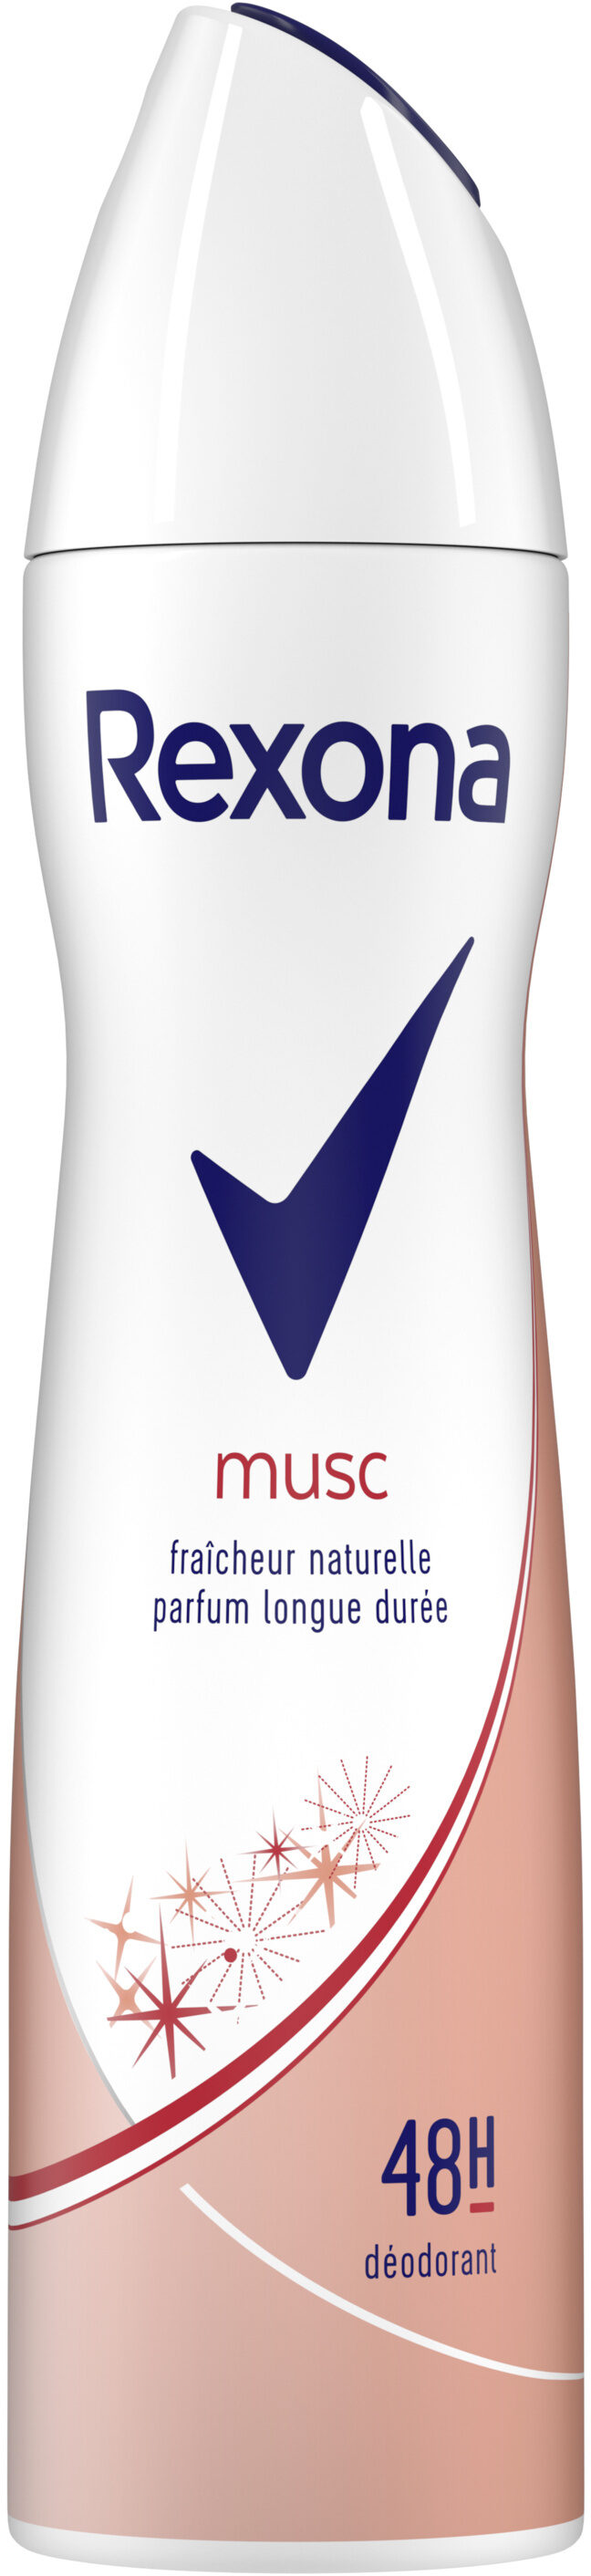 Rexona Déodorant Femme Spray Musc Fraîcheur Naturelle 200ml - Produto - fr